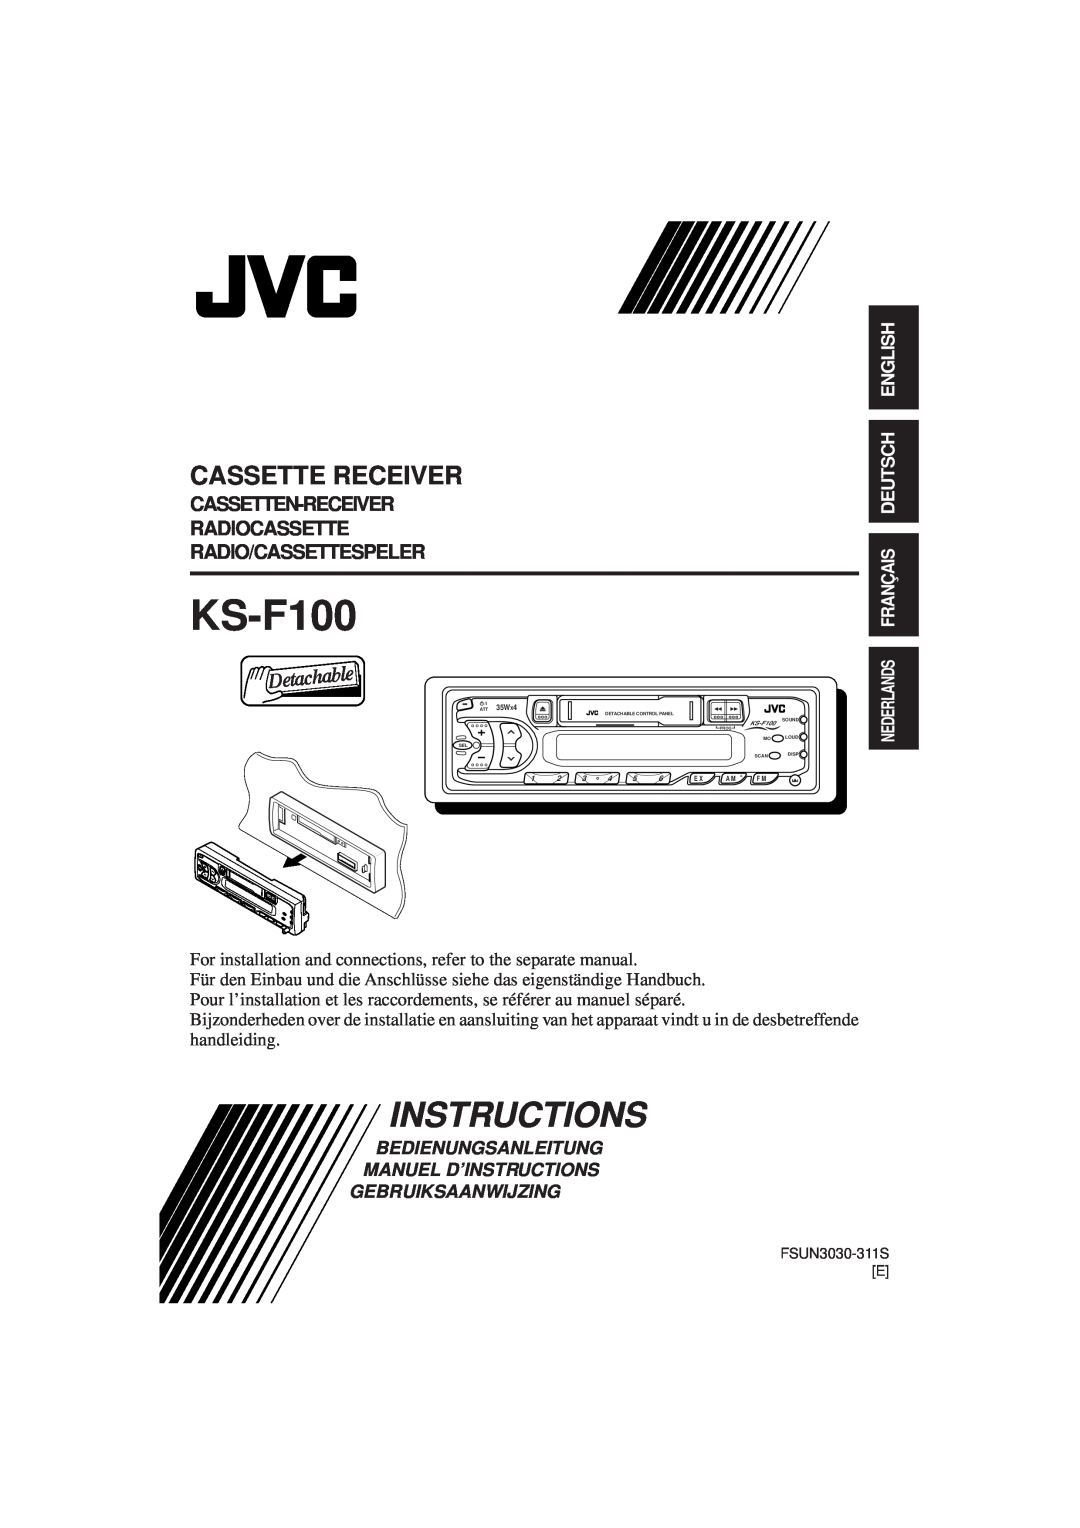 JVC KS F100 manual Nederlands Français Deutsch English, Bedienungsanleitung Manuel D’Instructions, Gebruiksaanwijzing 